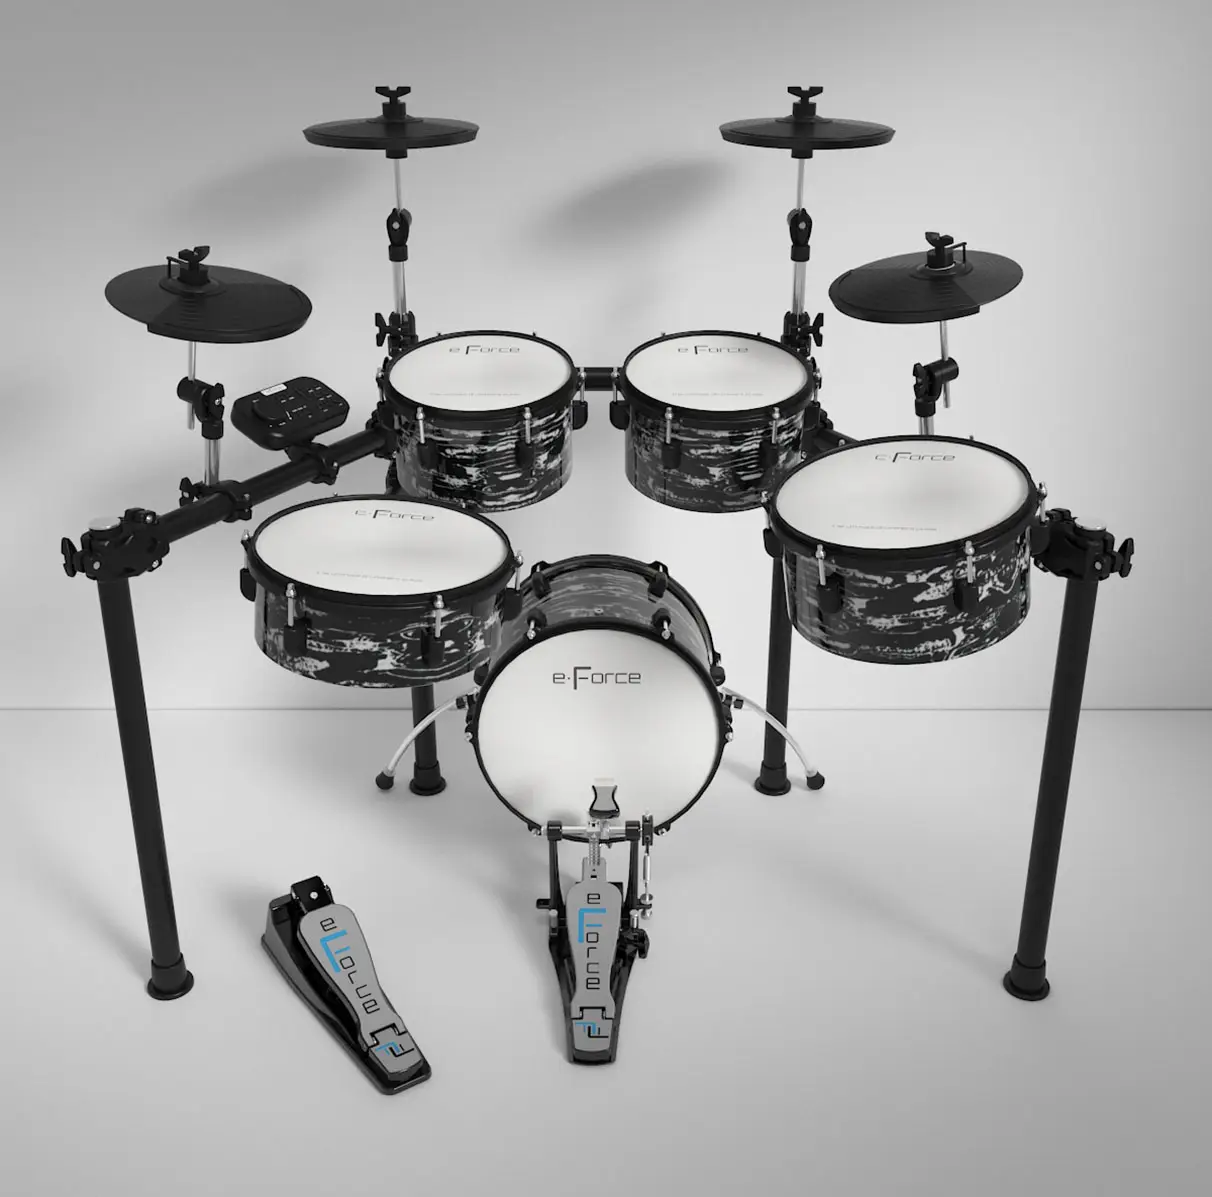 E-Force Music professionelles Musikinstrument Elektrisches Schlagzeug F30 Serie hochwertige tragbare elektronische Hybrid-Schlagzeug-Kits